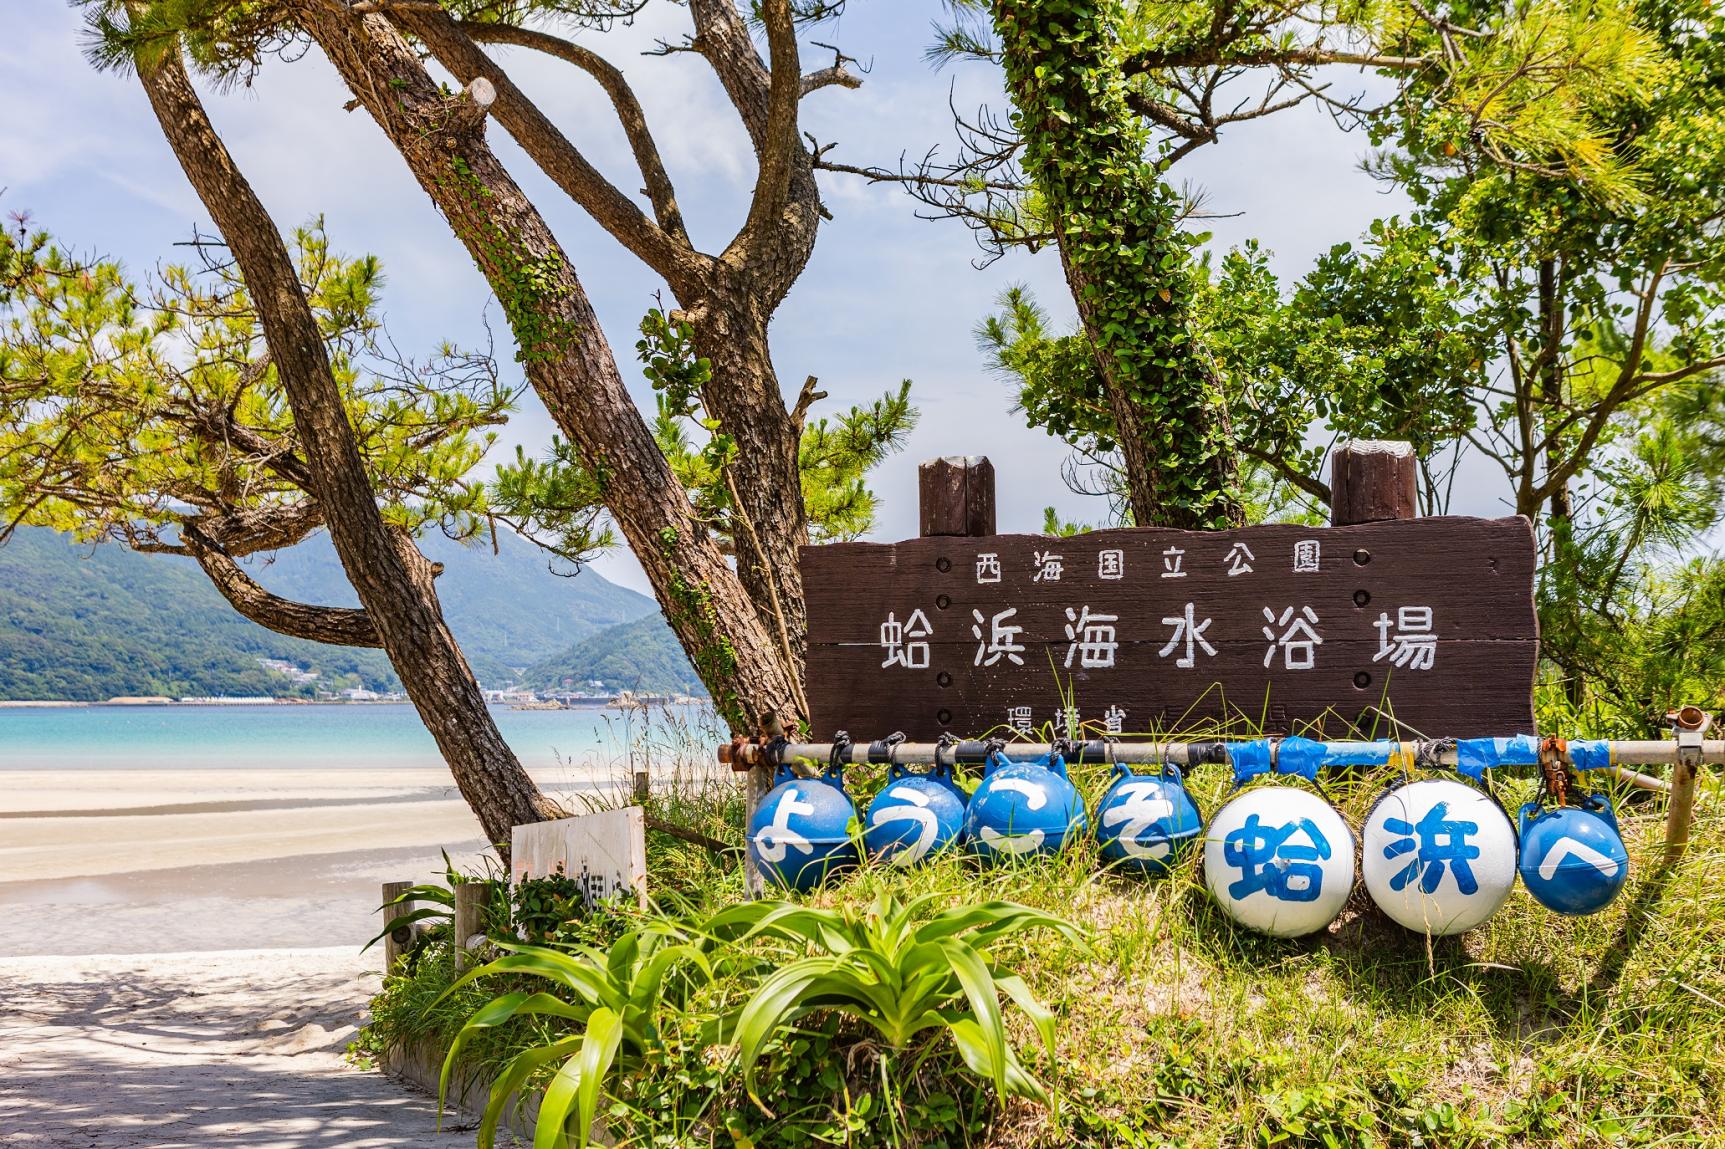 日本の快水浴場百選に選ばれた新上五島町の代表的な海-1